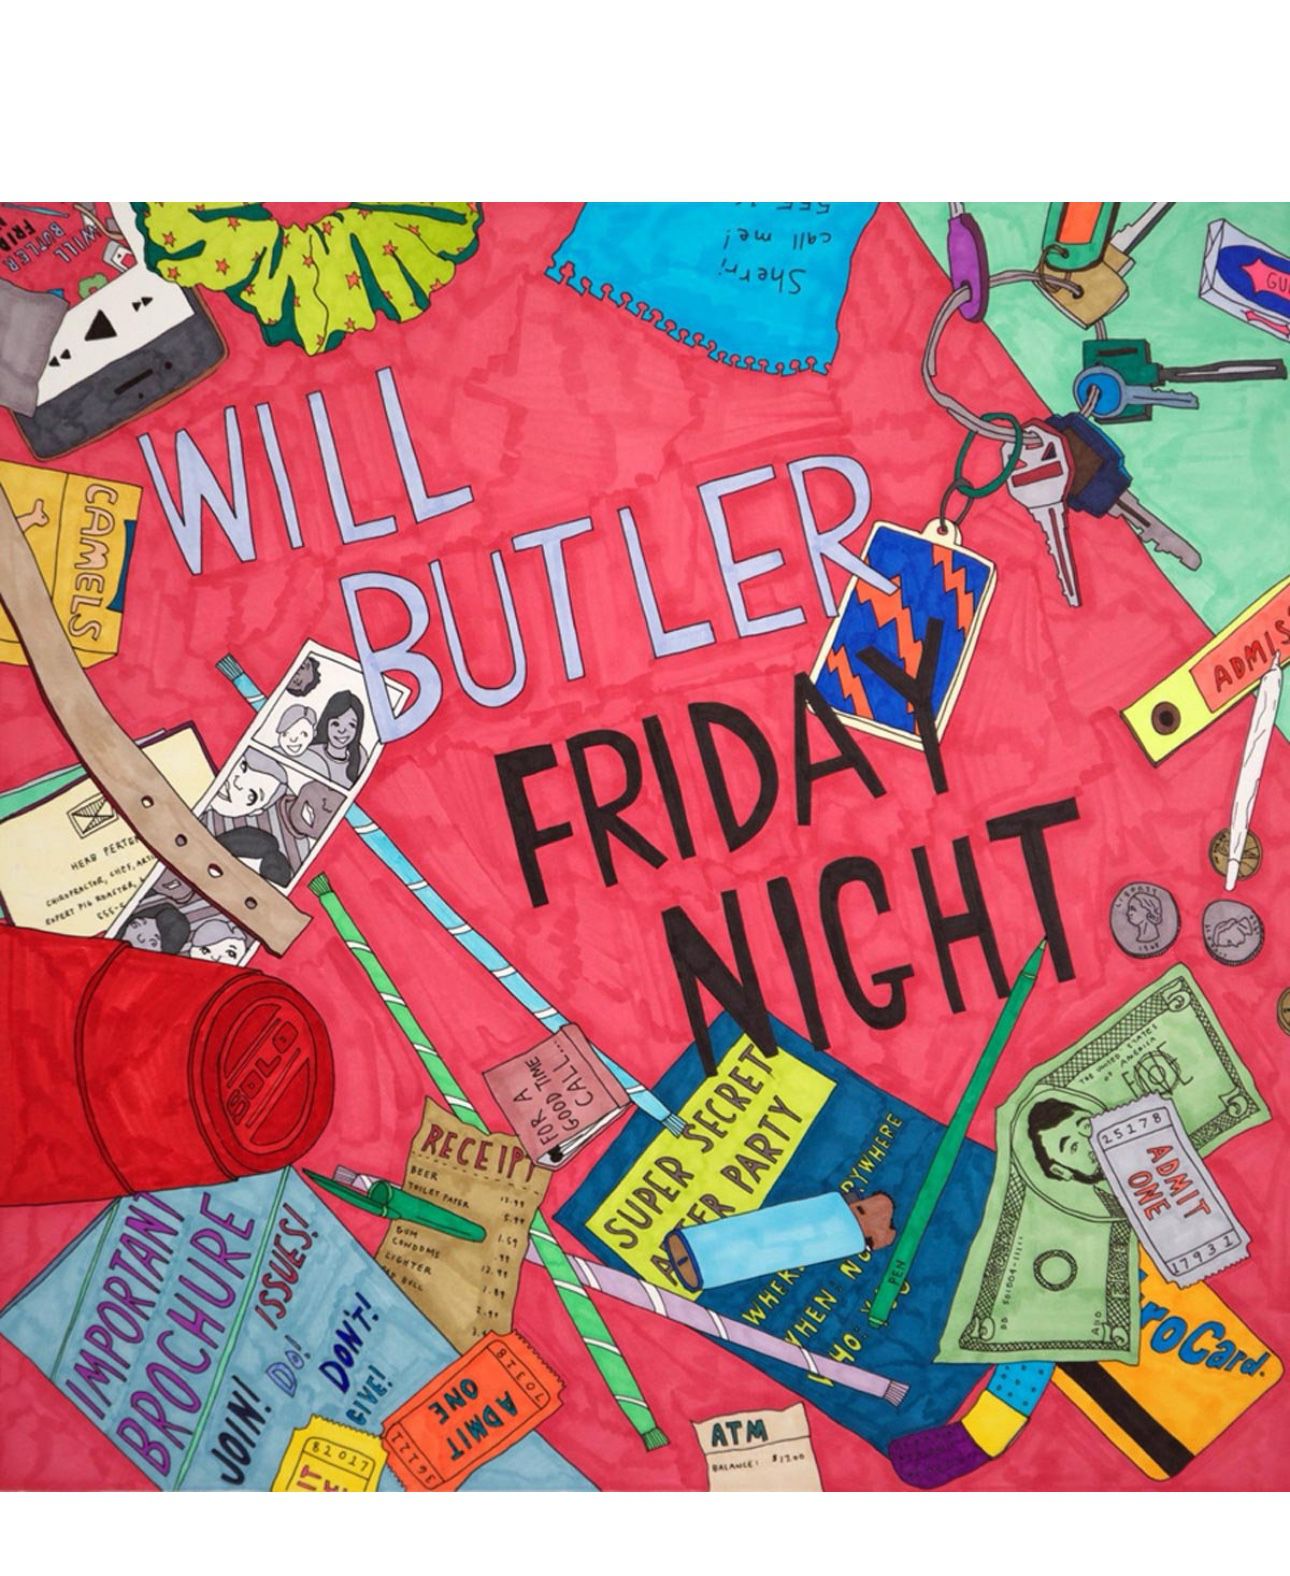 Will Butler Friday Night cd